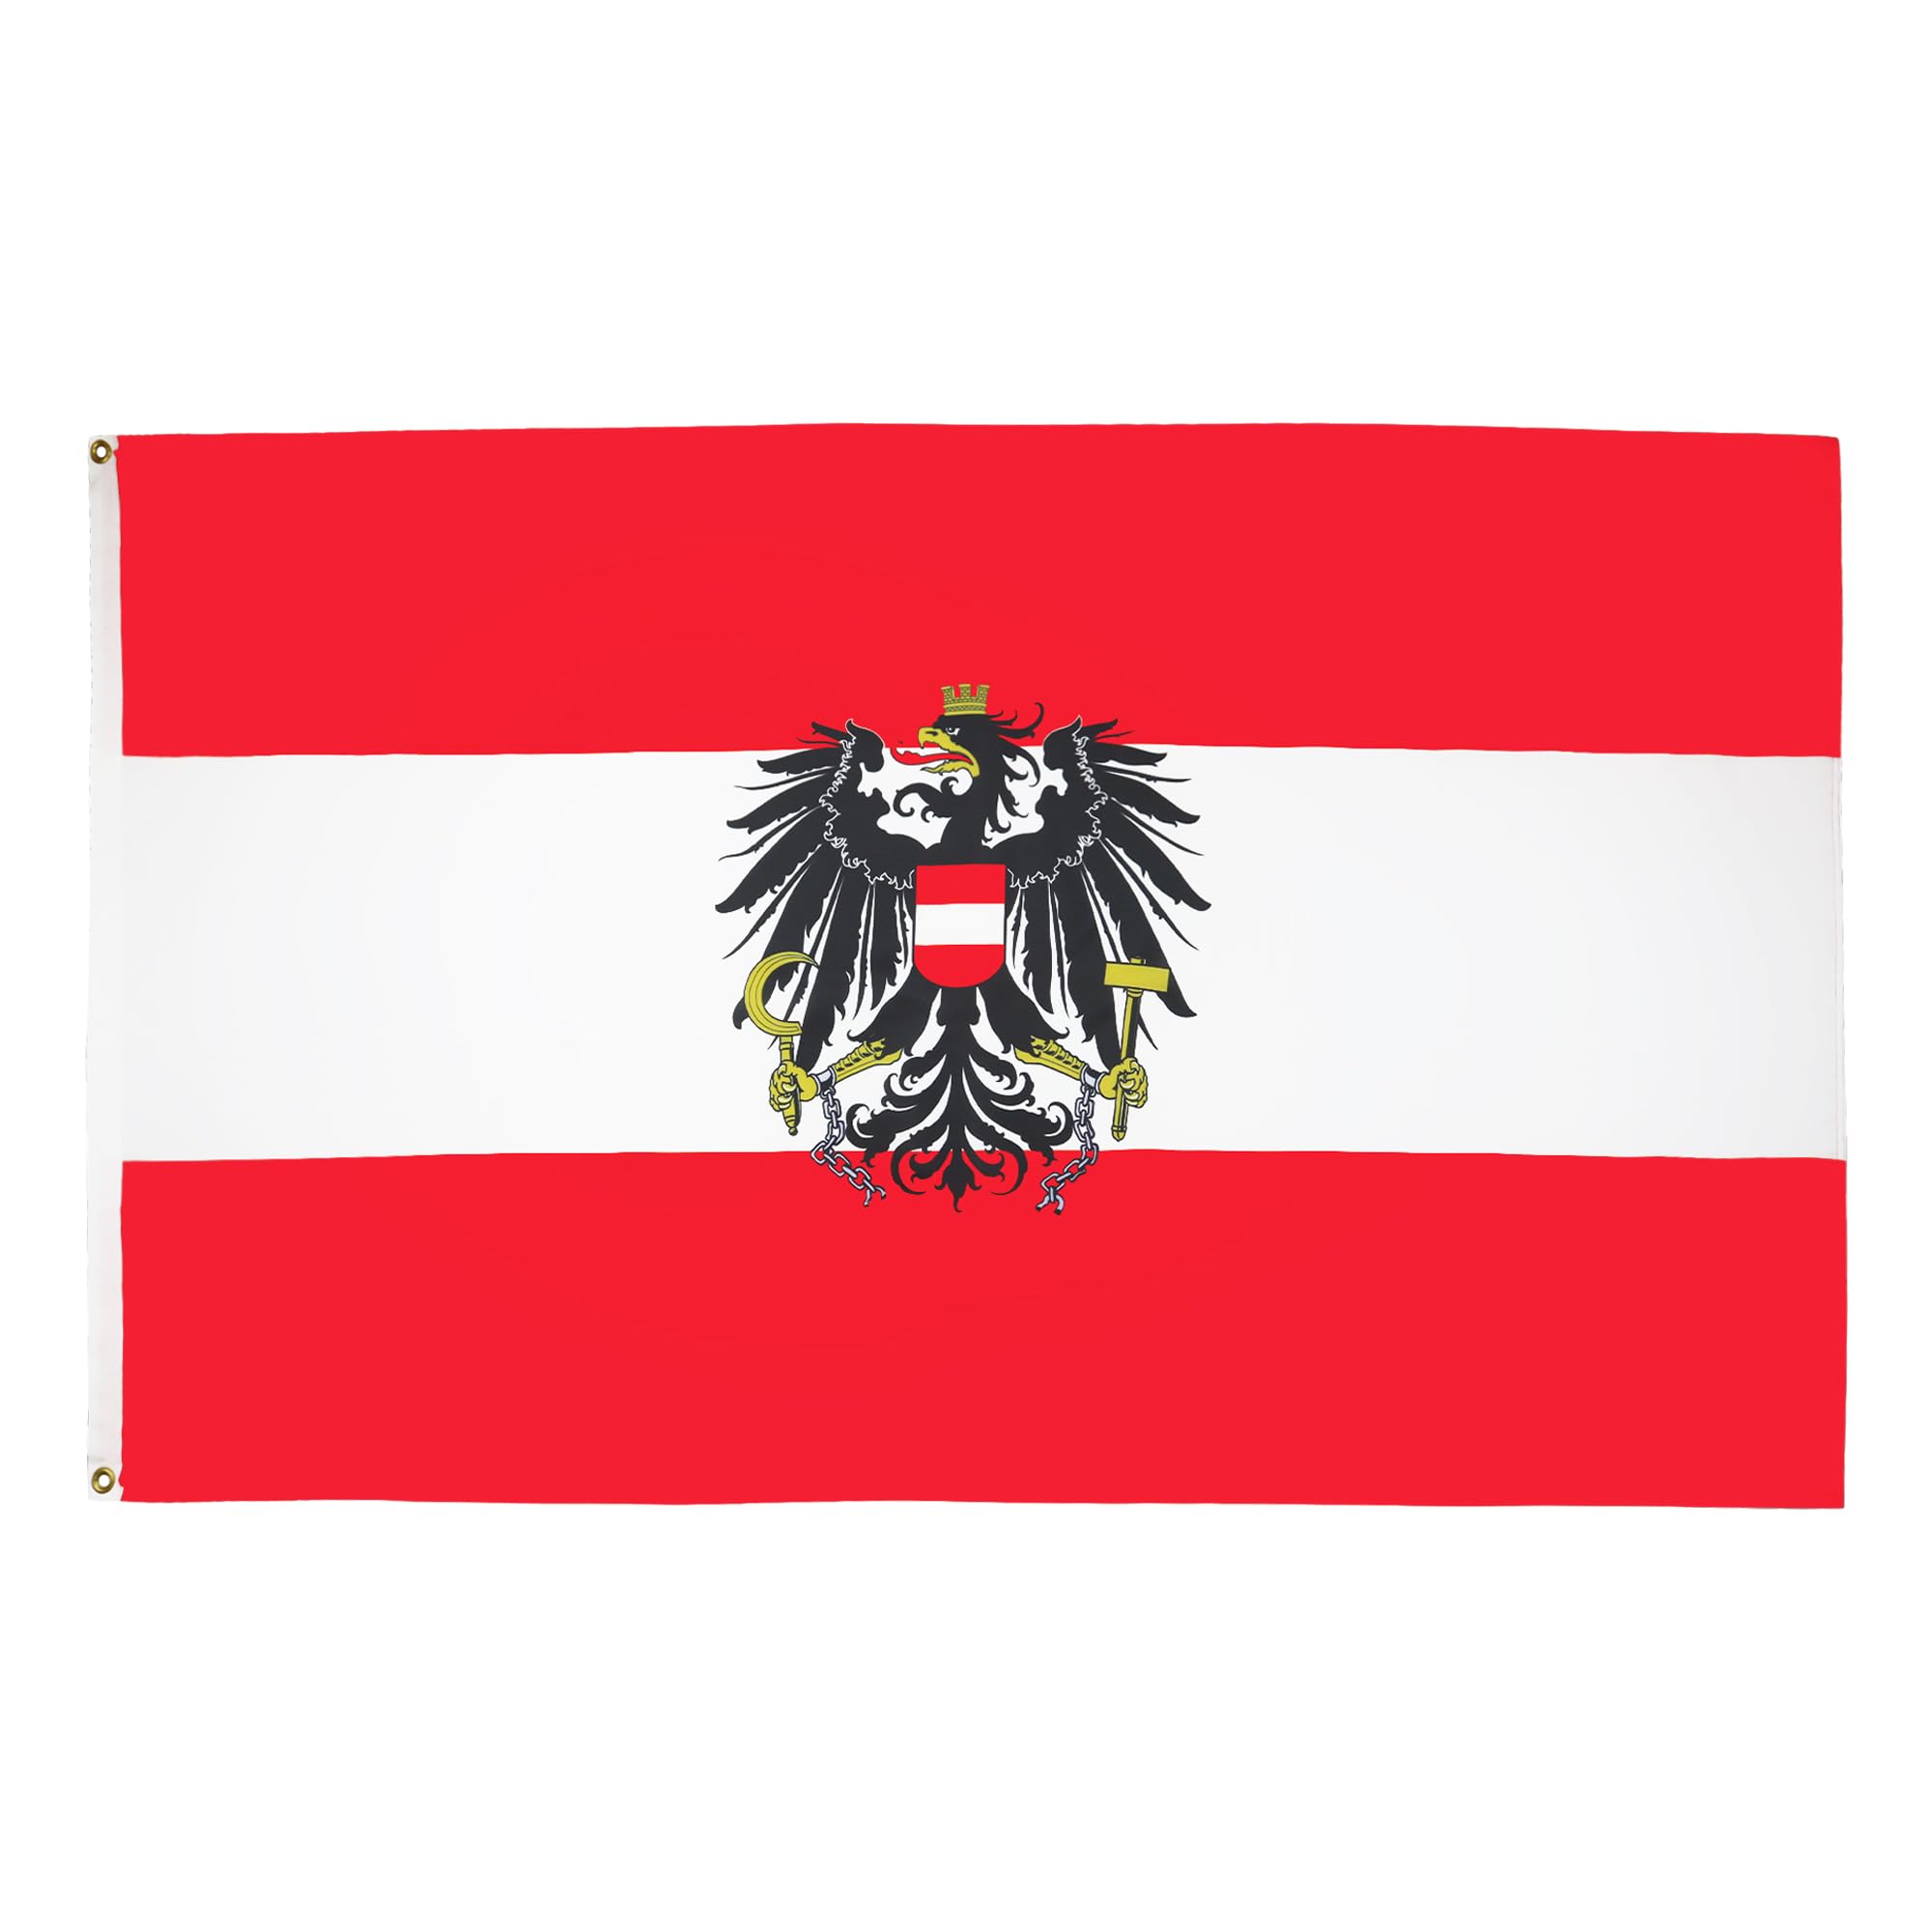 AZ FLAG Flagge ÖSTERREICH MIT Adler 250x150cm - ÖSTERREICHISCHE Fahne 150 x 250 cm - flaggen Top Qualität